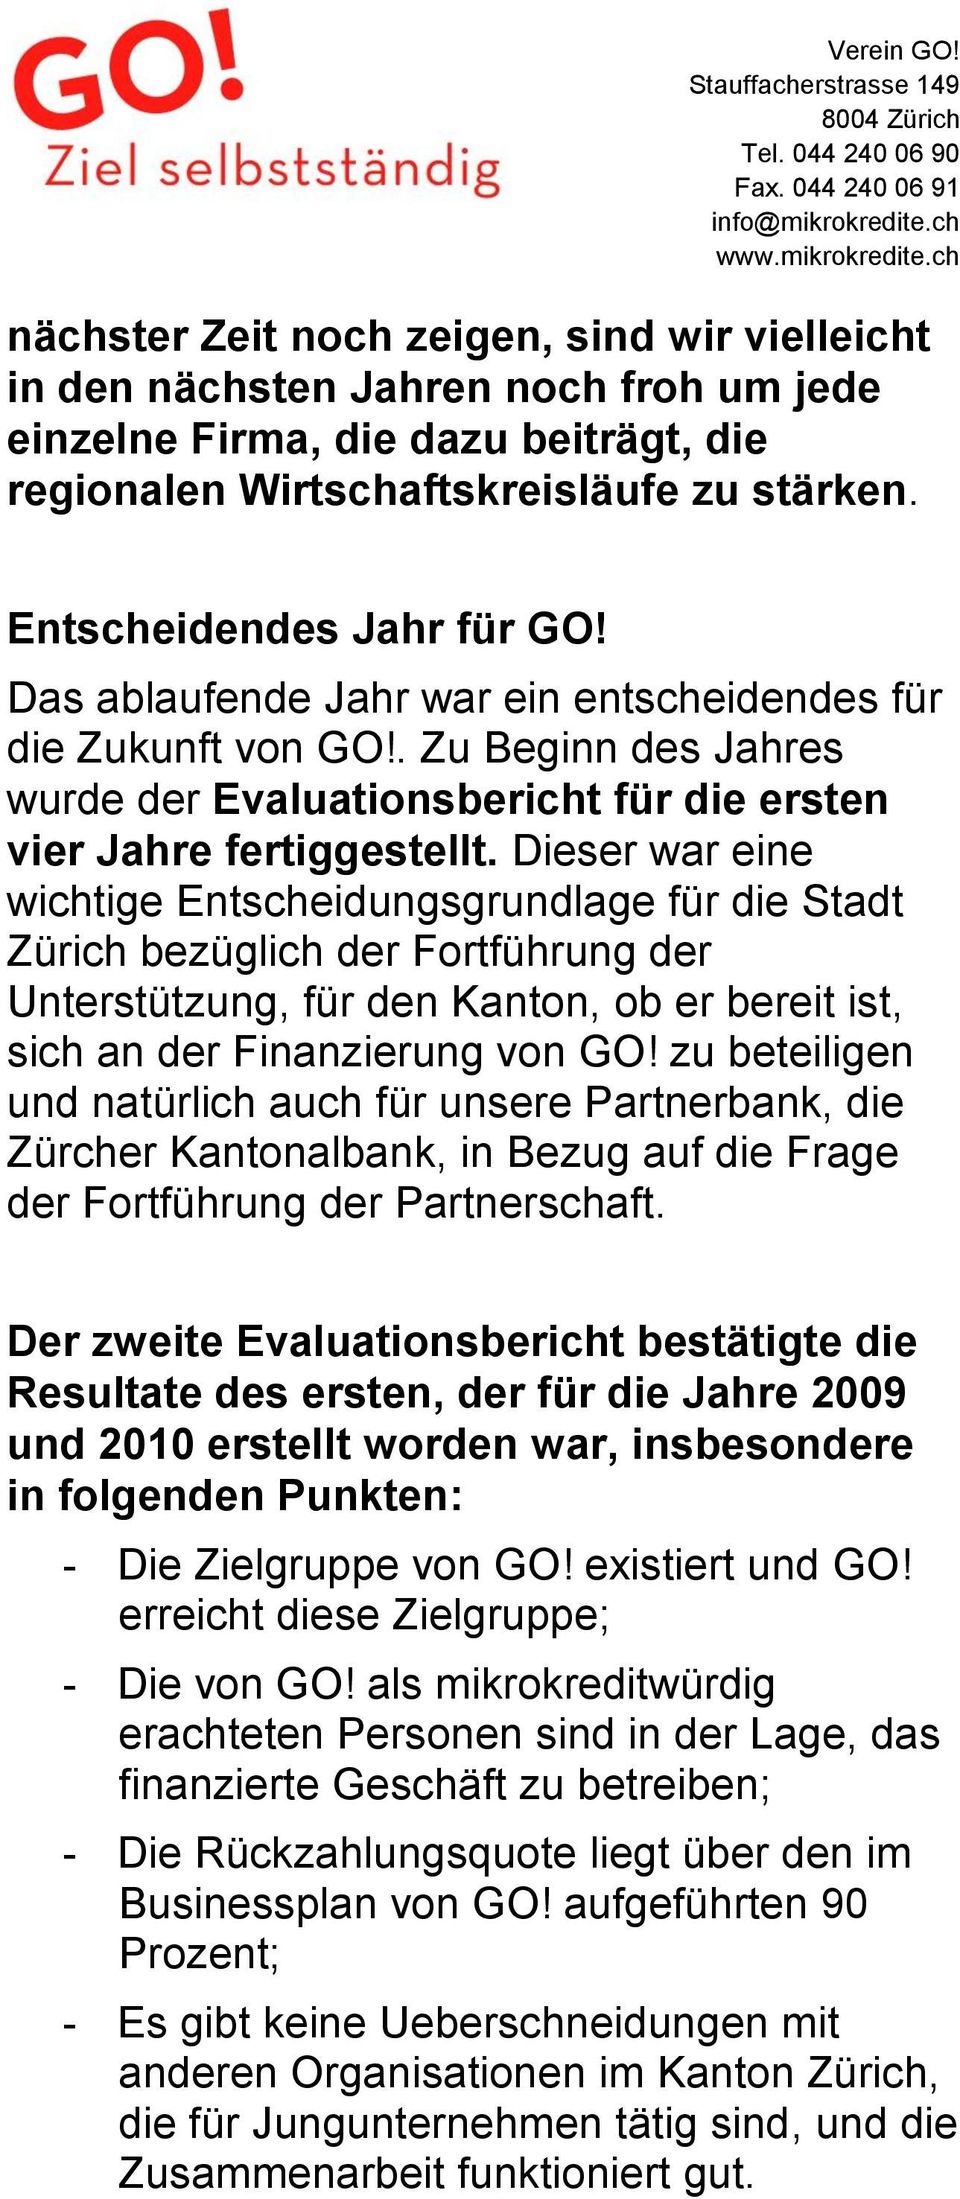 Dieser war eine wichtige Entscheidungsgrundlage für die Stadt Zürich bezüglich der Fortführung der Unterstützung, für den Kanton, ob er bereit ist, sich an der Finanzierung von GO!